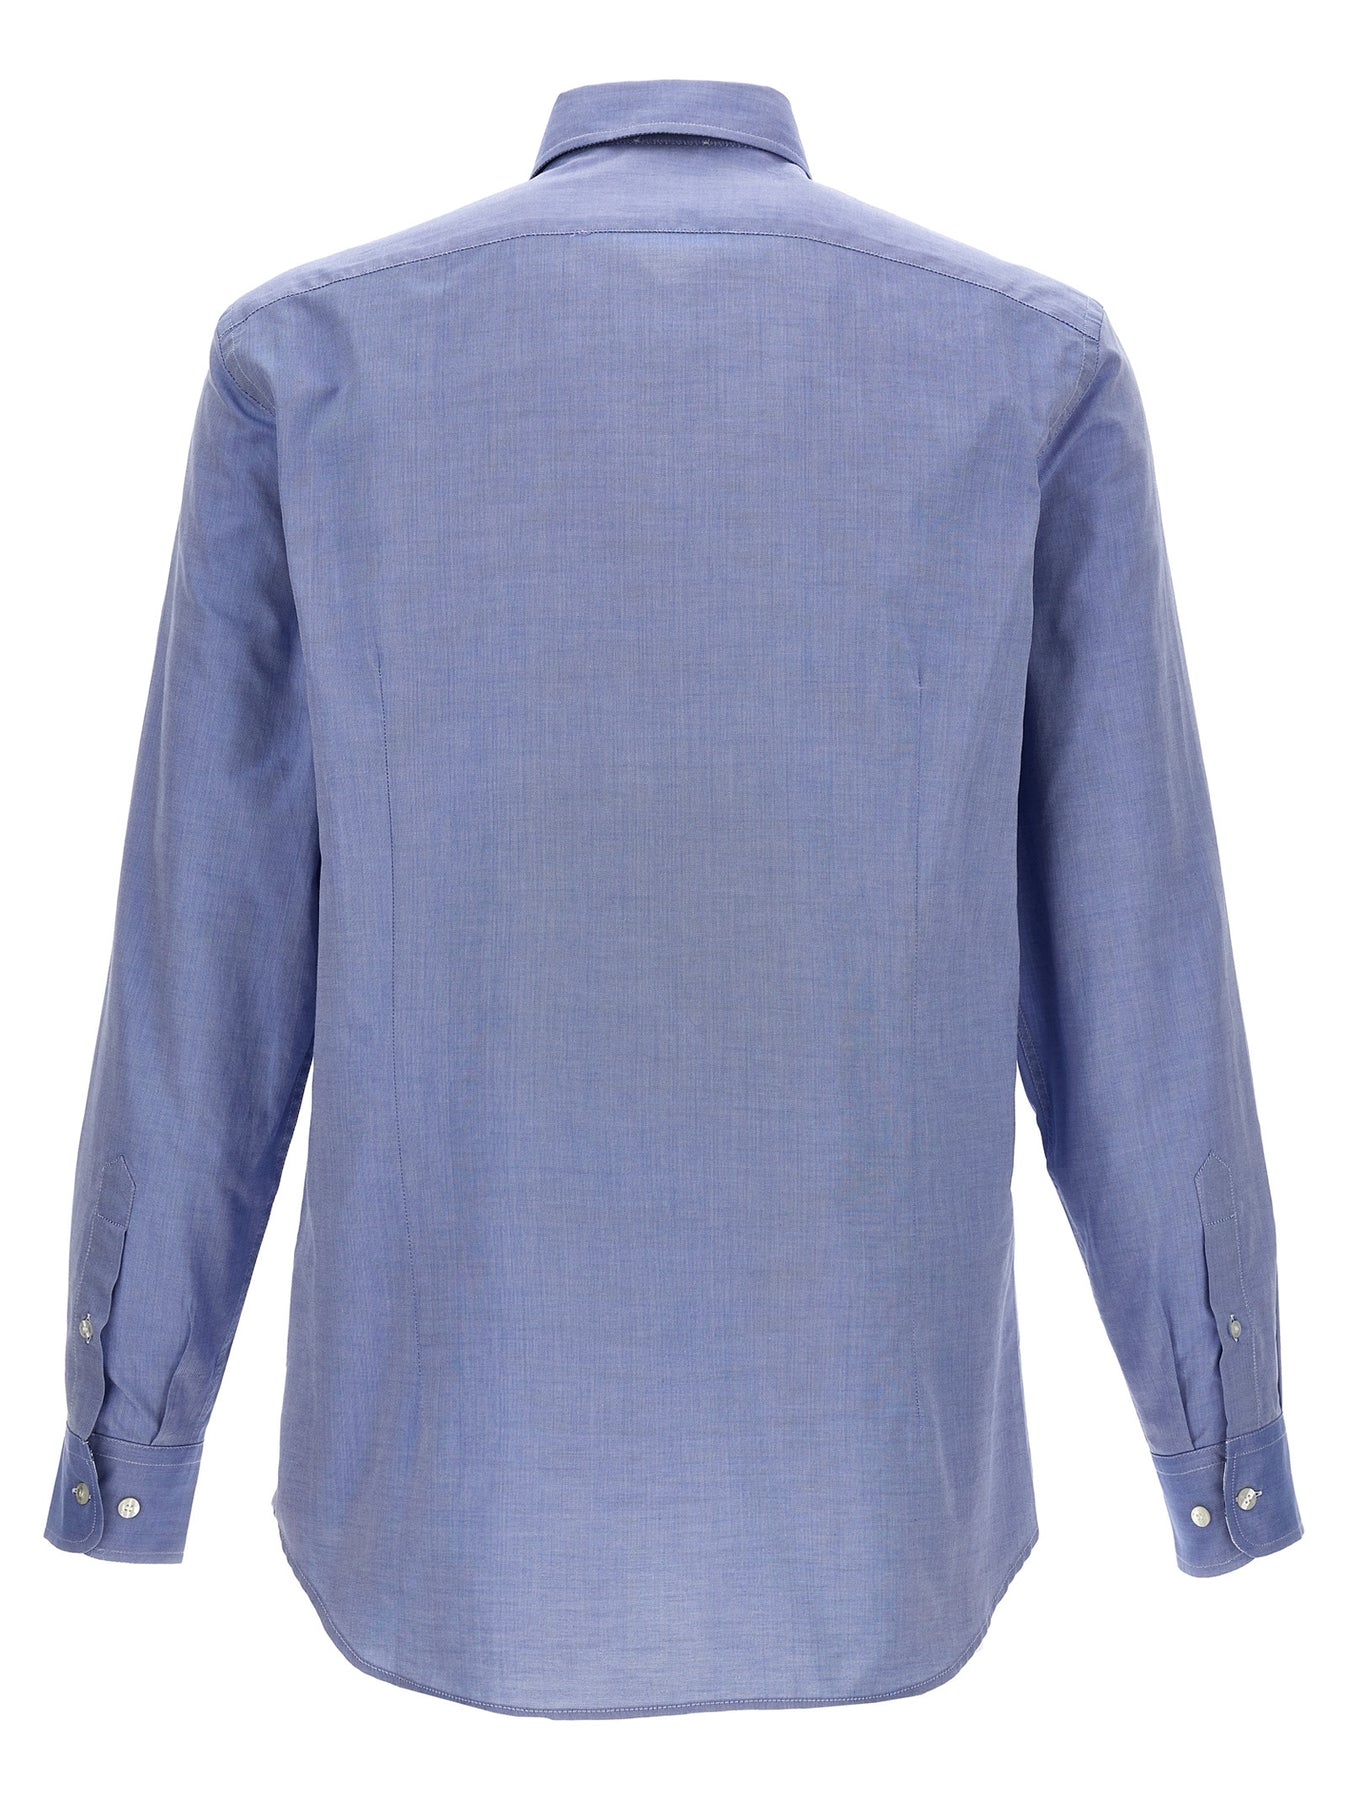 Cotton Shirt Shirt, Blouse Light Blue - 2